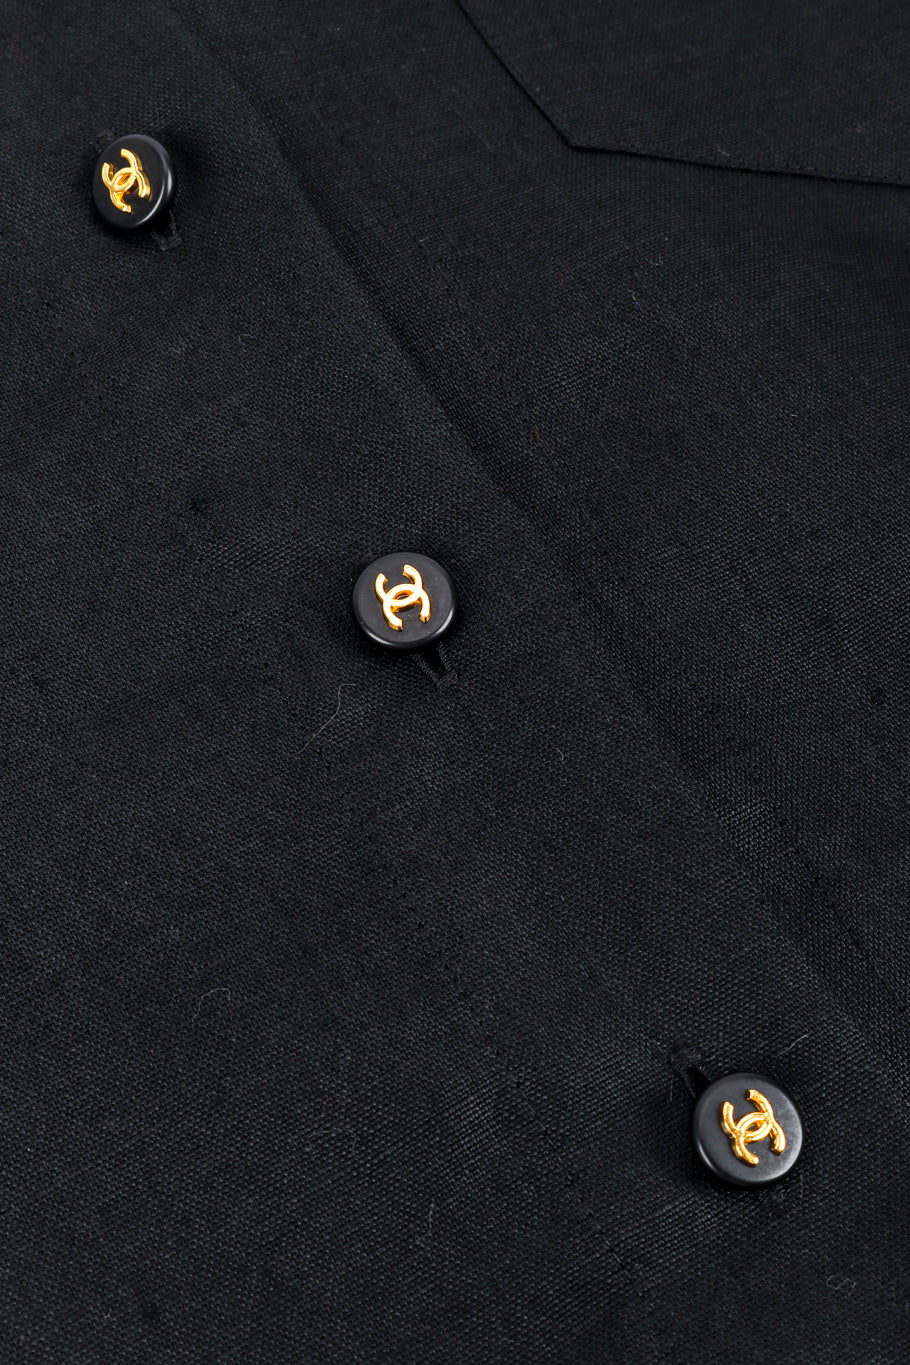 Vintage Chanel CC Button Linen Shirt front button closure closeup @recessla